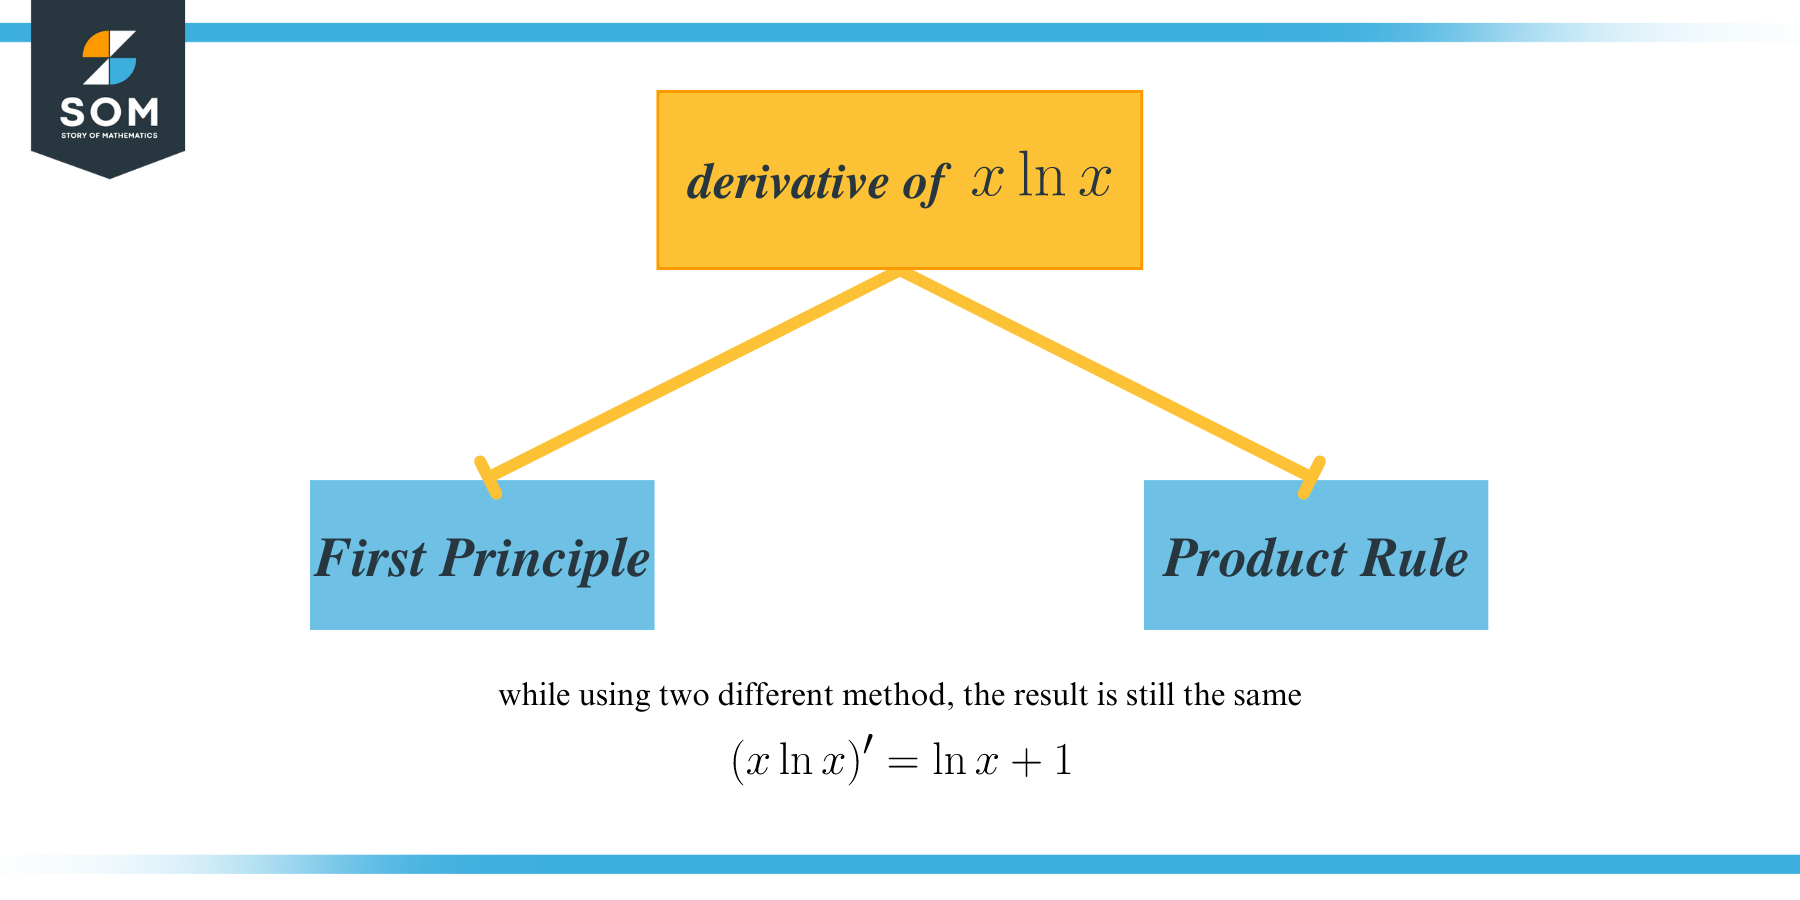 Derivative of xlnx two ways